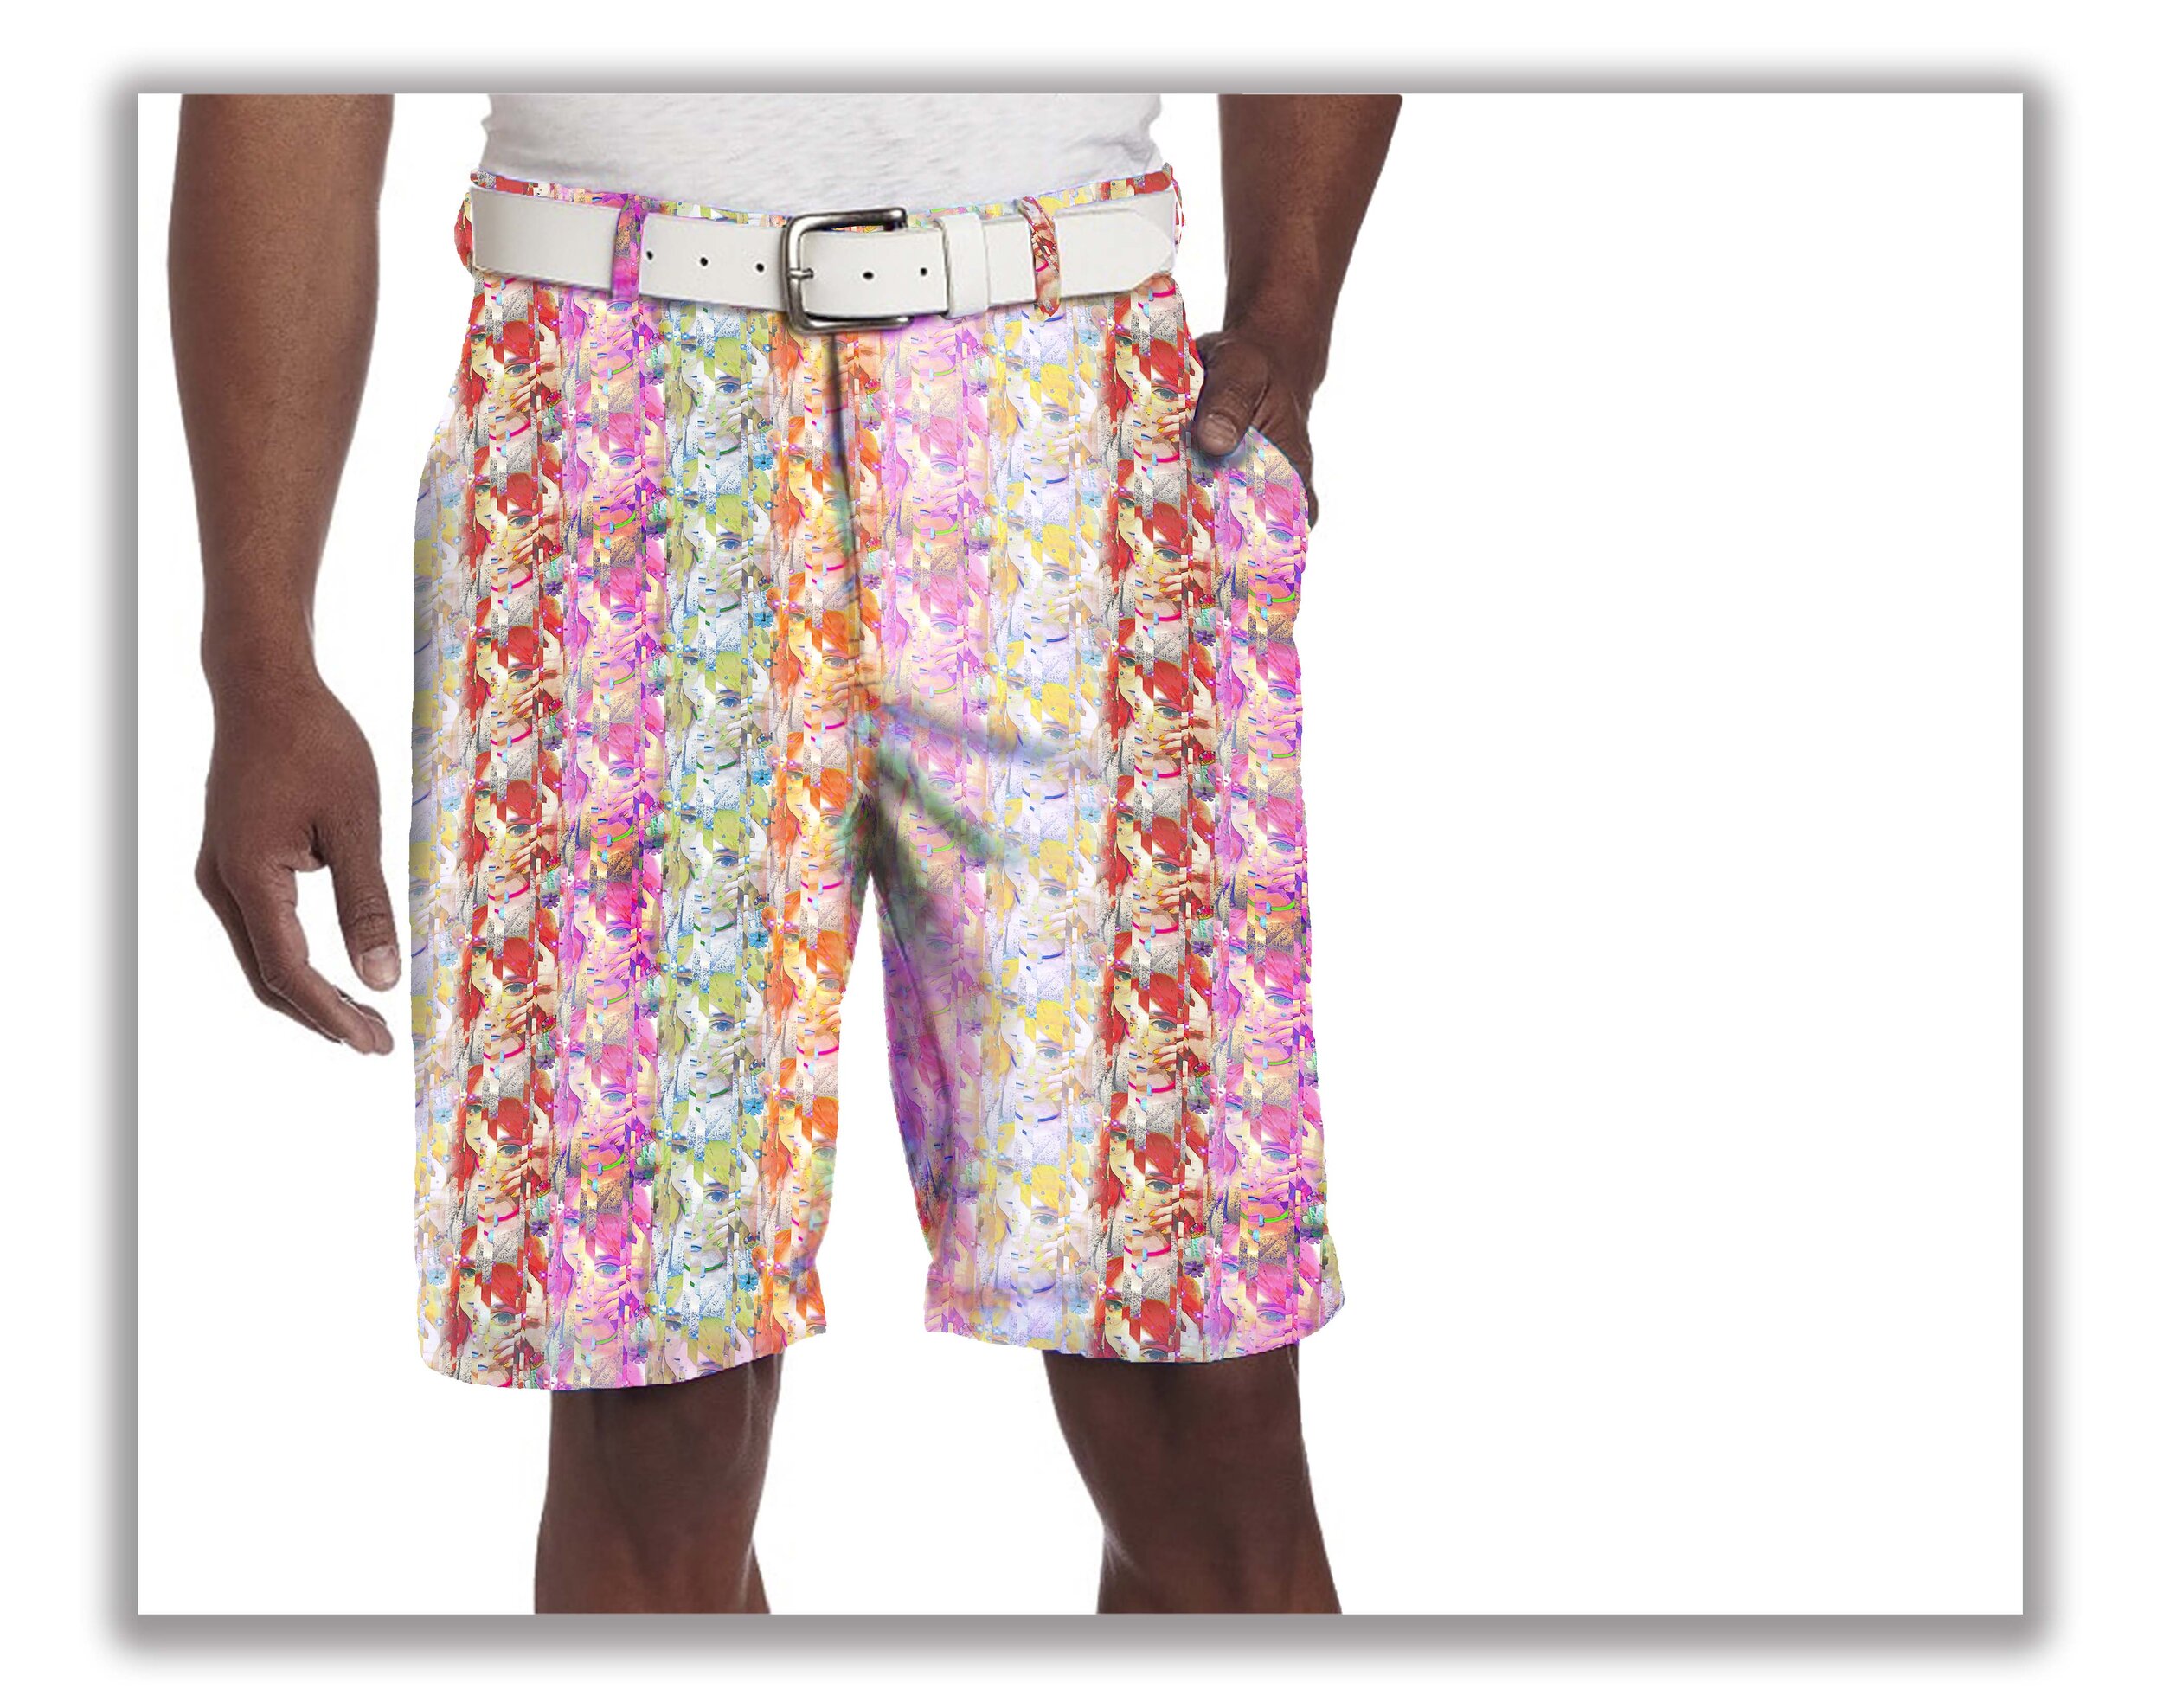 Bermuda Shorts rendering lr.jpg